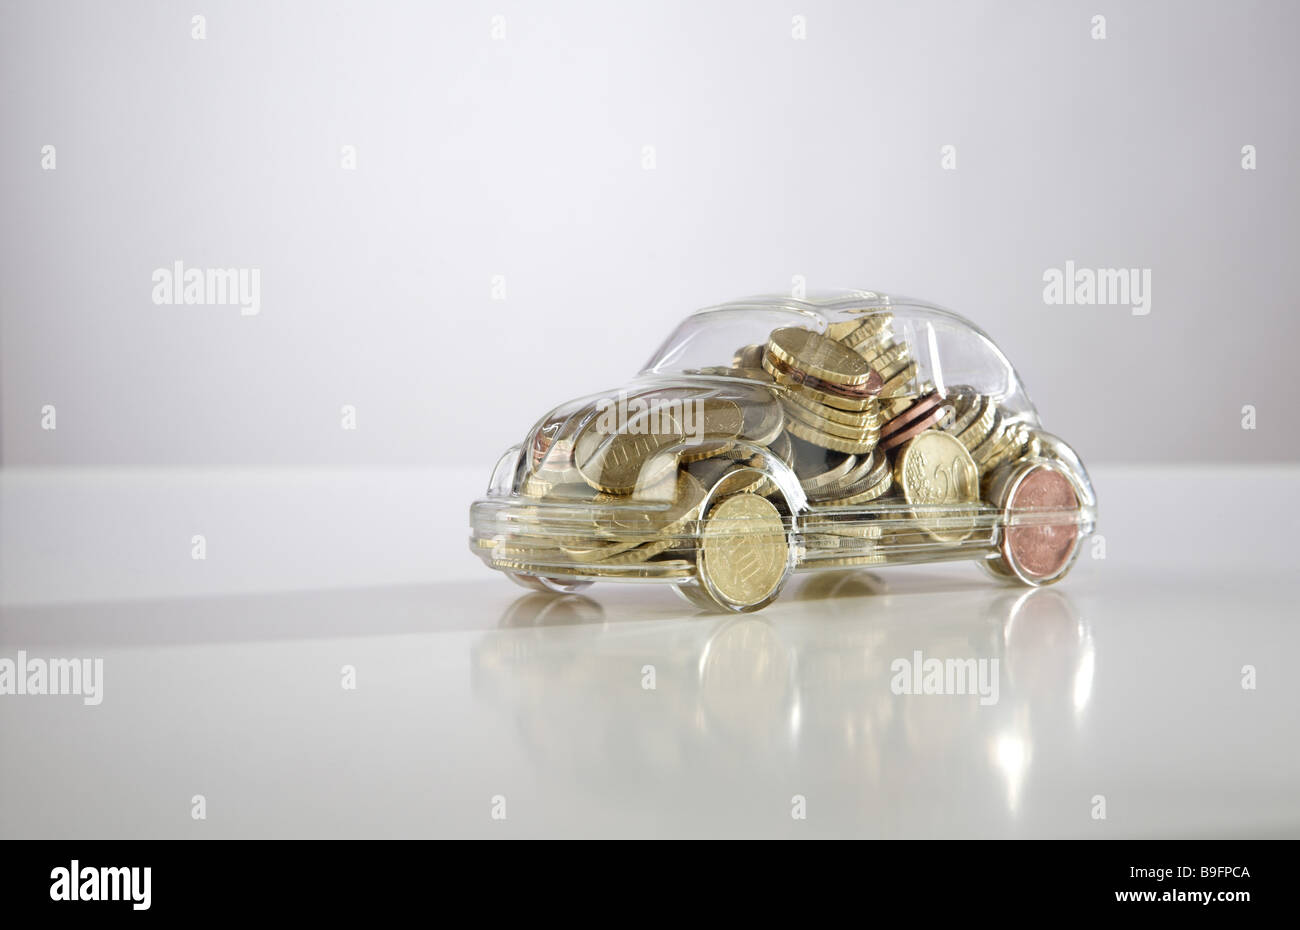 saving-can  car  transparently  money Stock Photo